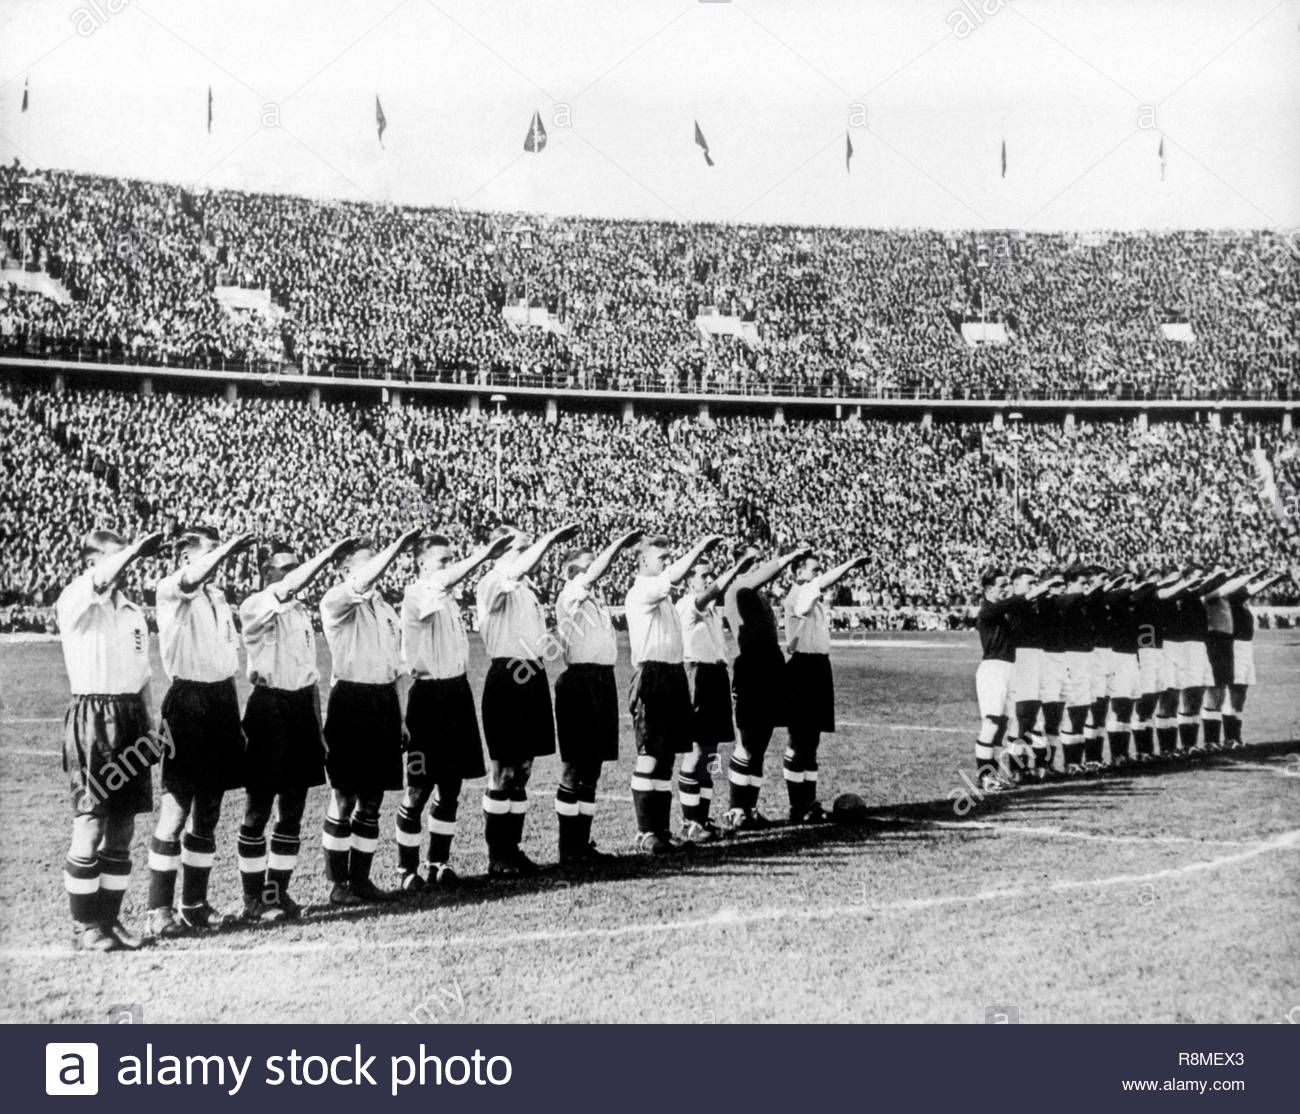 marsella-francia-junio-1938-el-equipo-de-futbol-italiano-hacer-el-saludo-romano-antes-del-partido-r8mex3.jpg